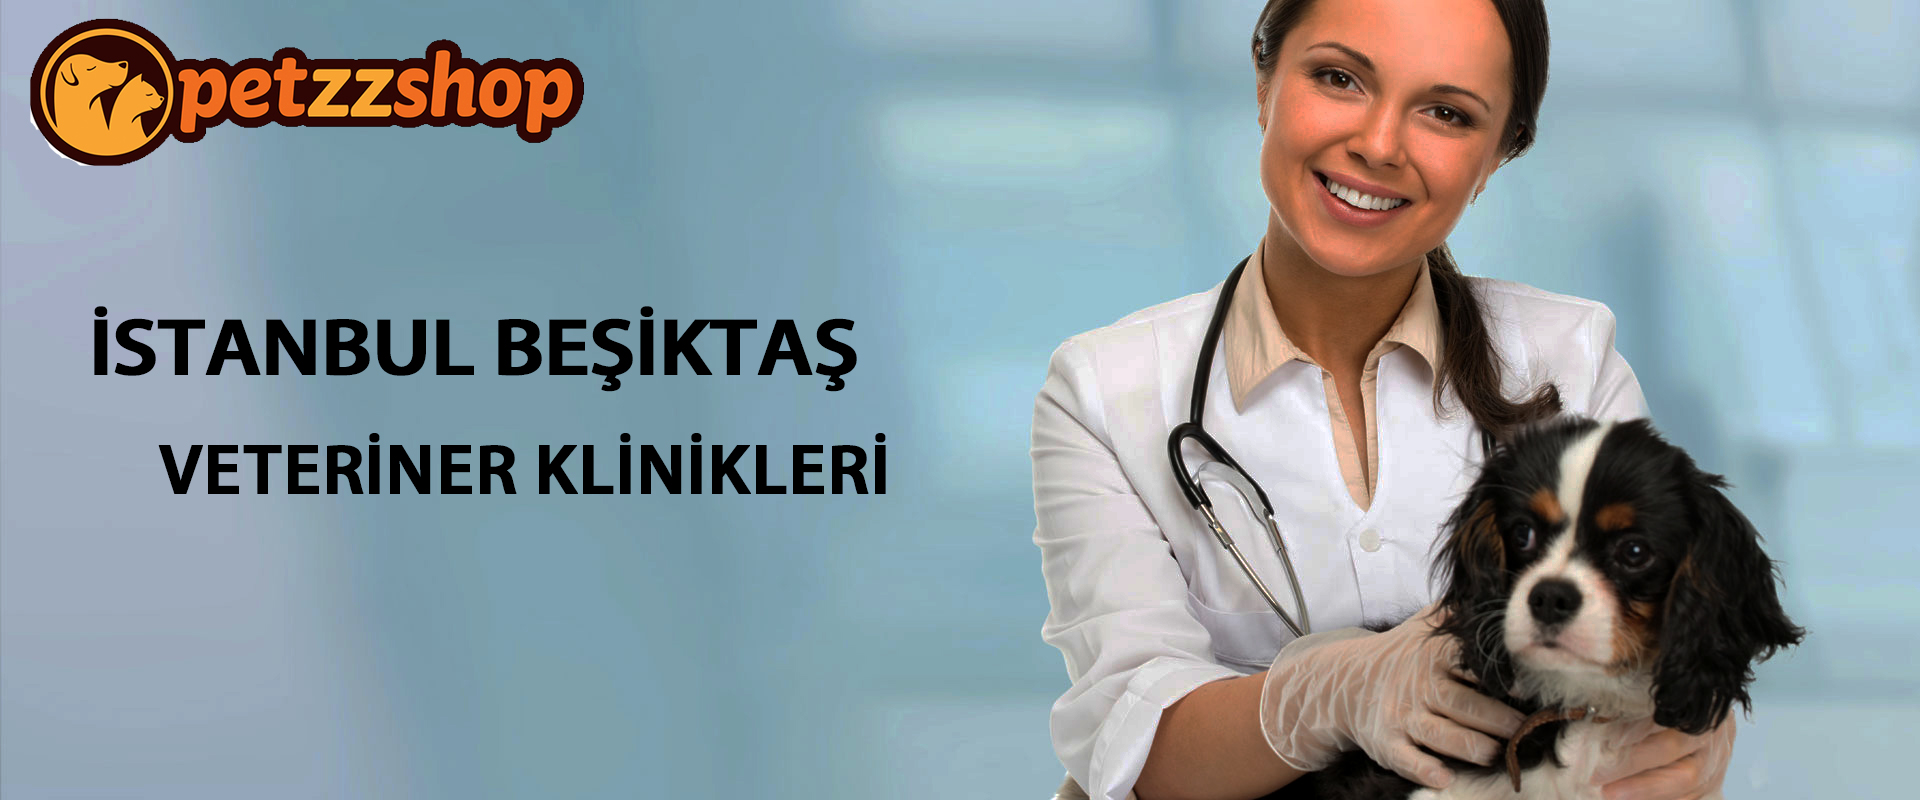 Beşiktaş Veteriner Klinikleri